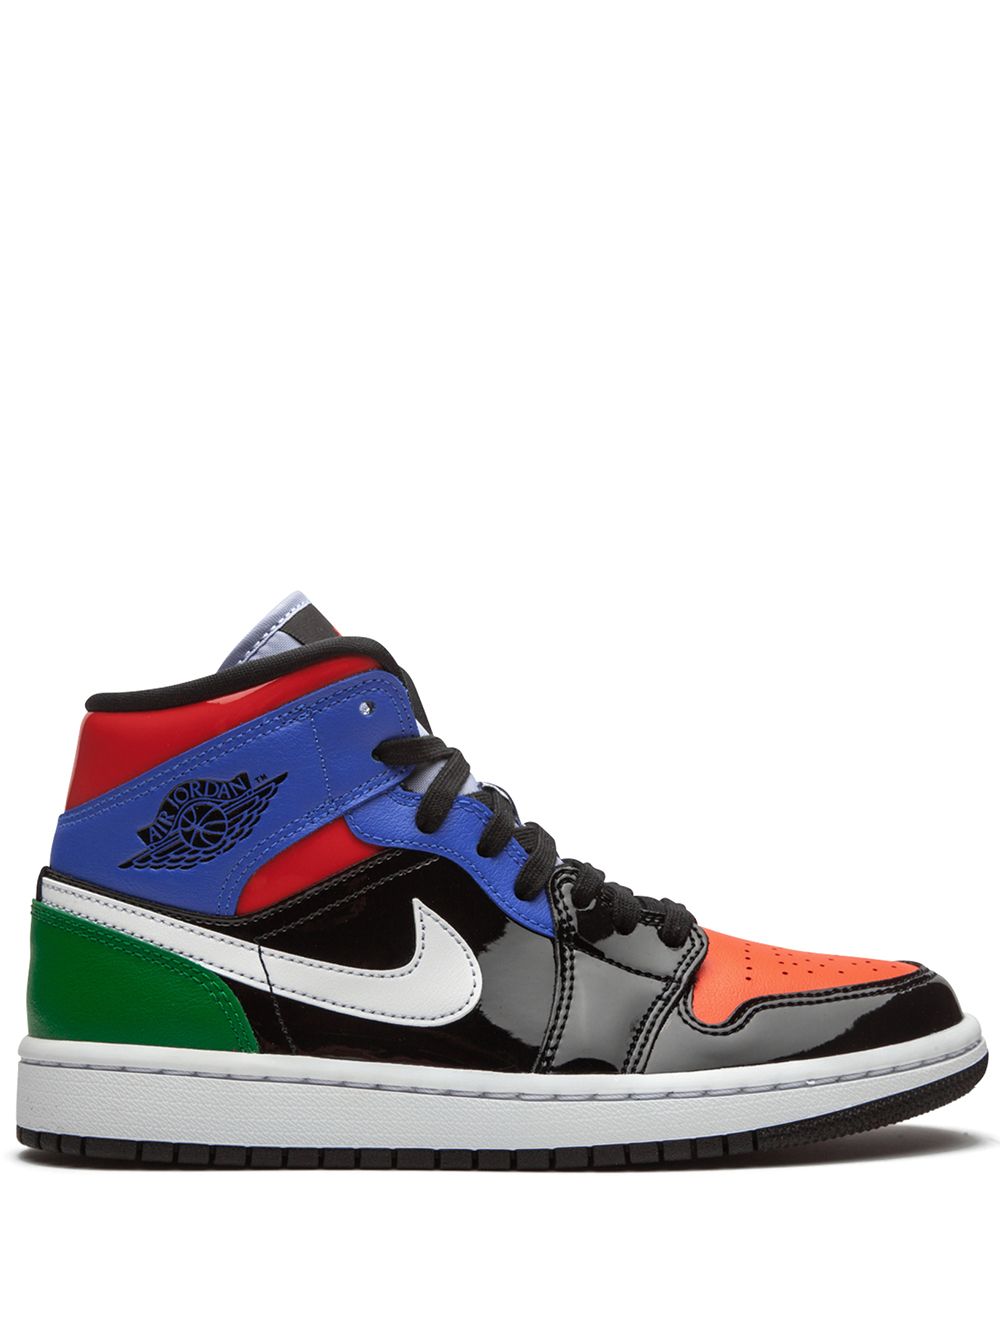 Jordan Air Jordan 1 Mid SE "Multicolor Patent" sneakers - Black